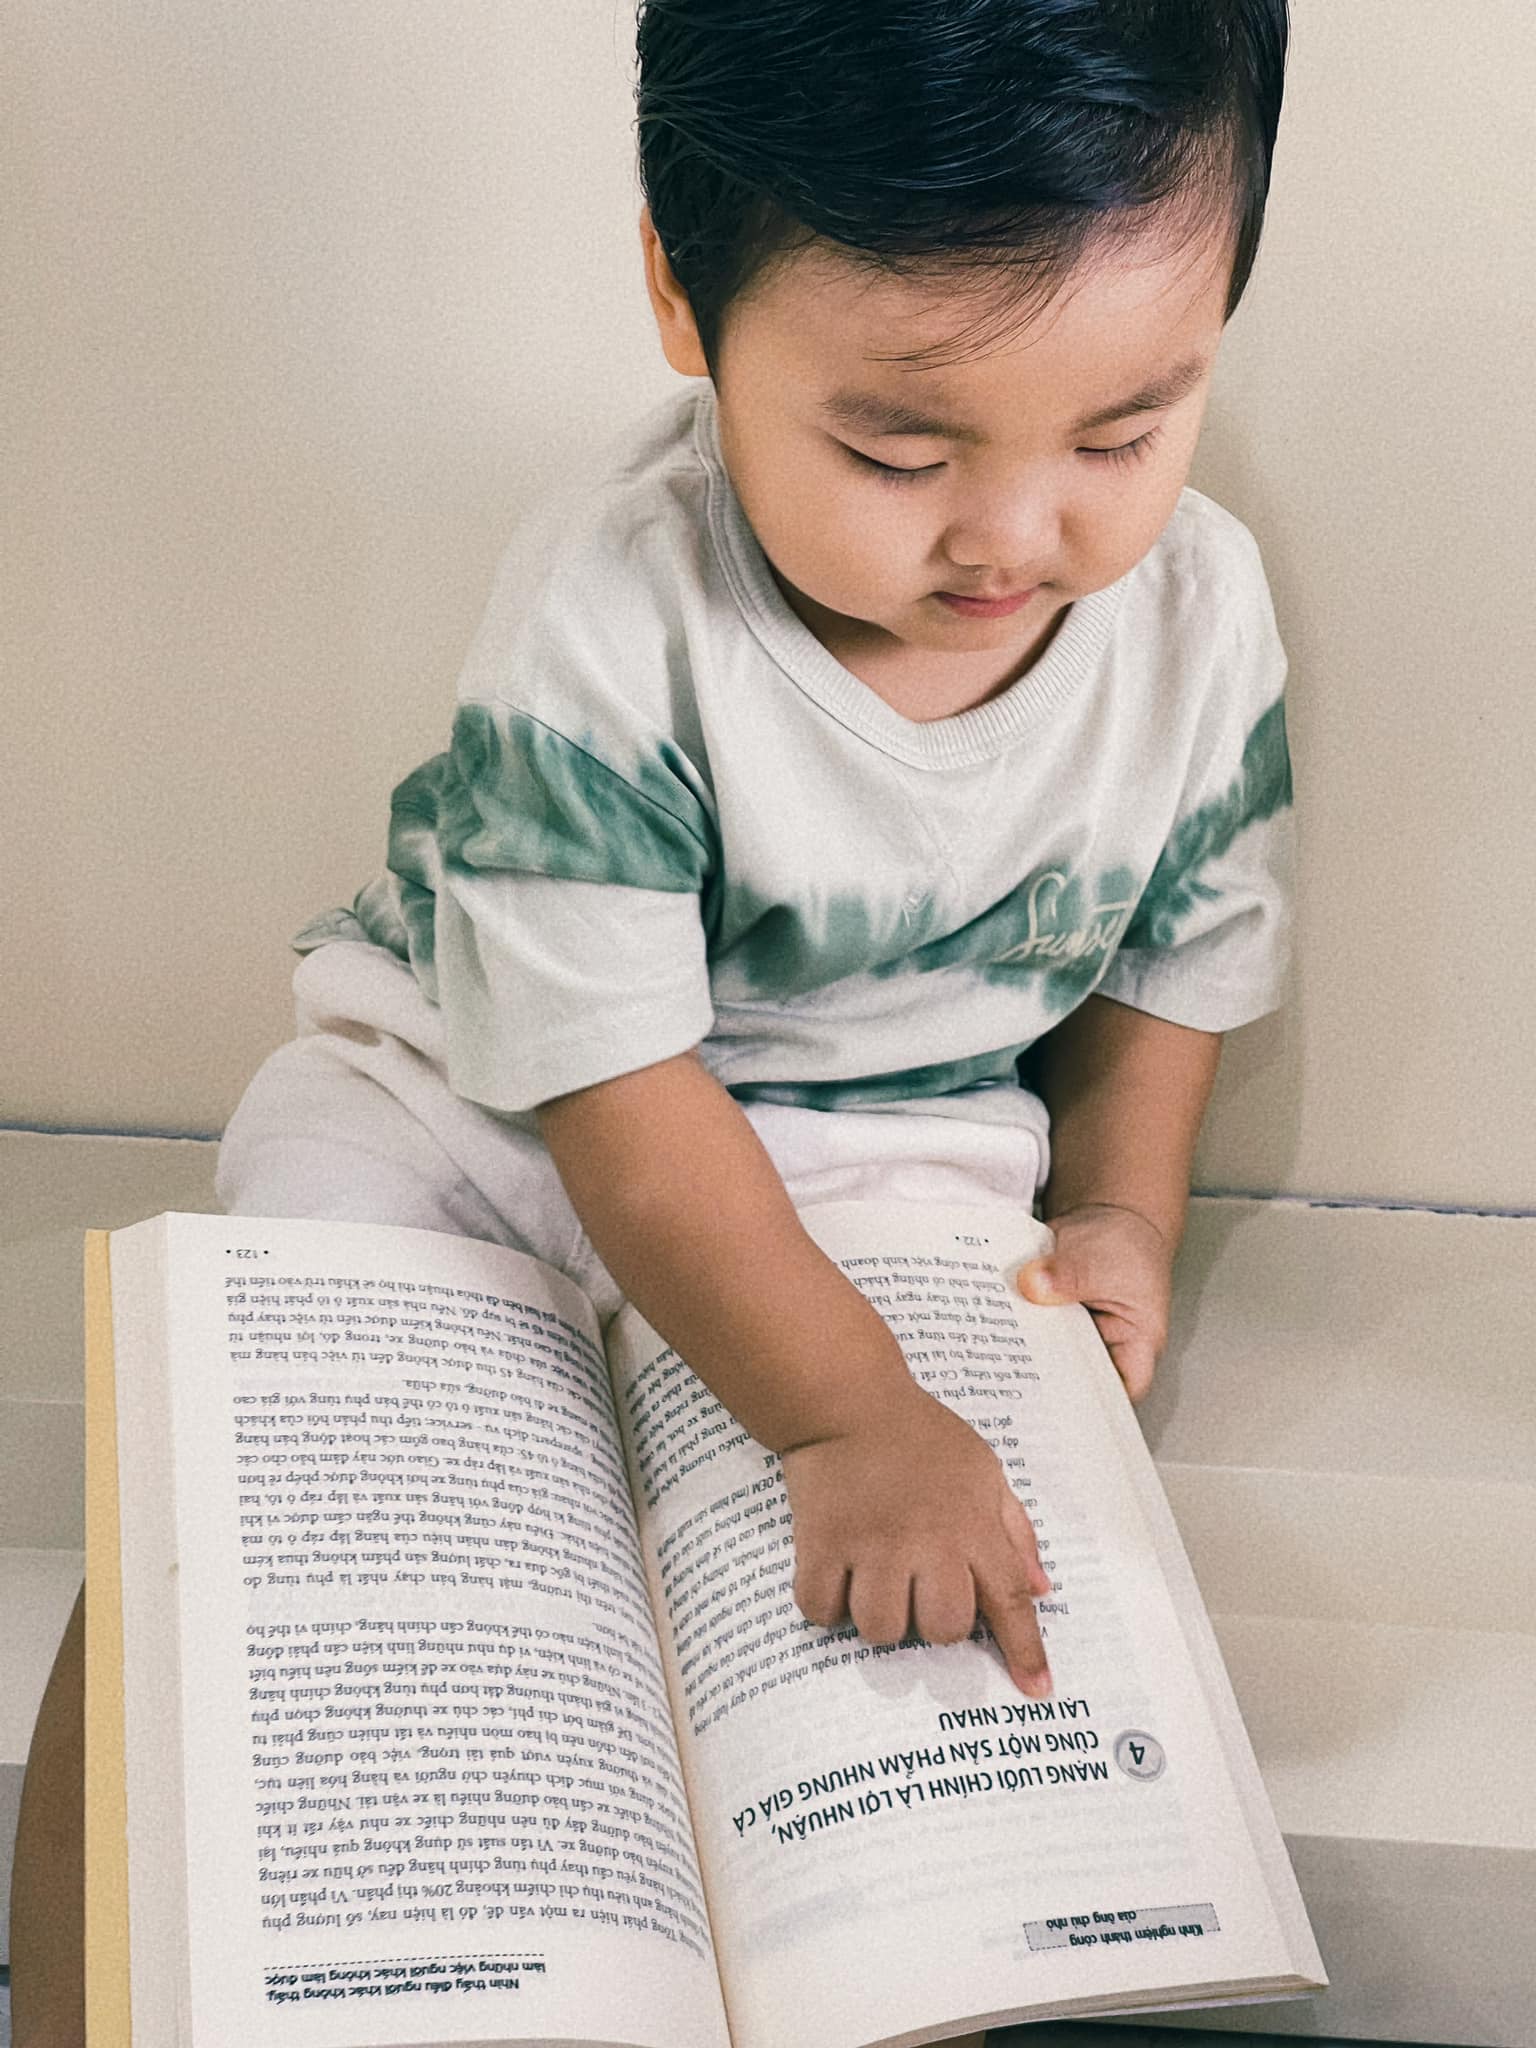 Mới hơn 1 tuổi con trai Hòa Minzy đã mê đọc sách, thái độ chăm chú đúng chuẩn dân tri thức